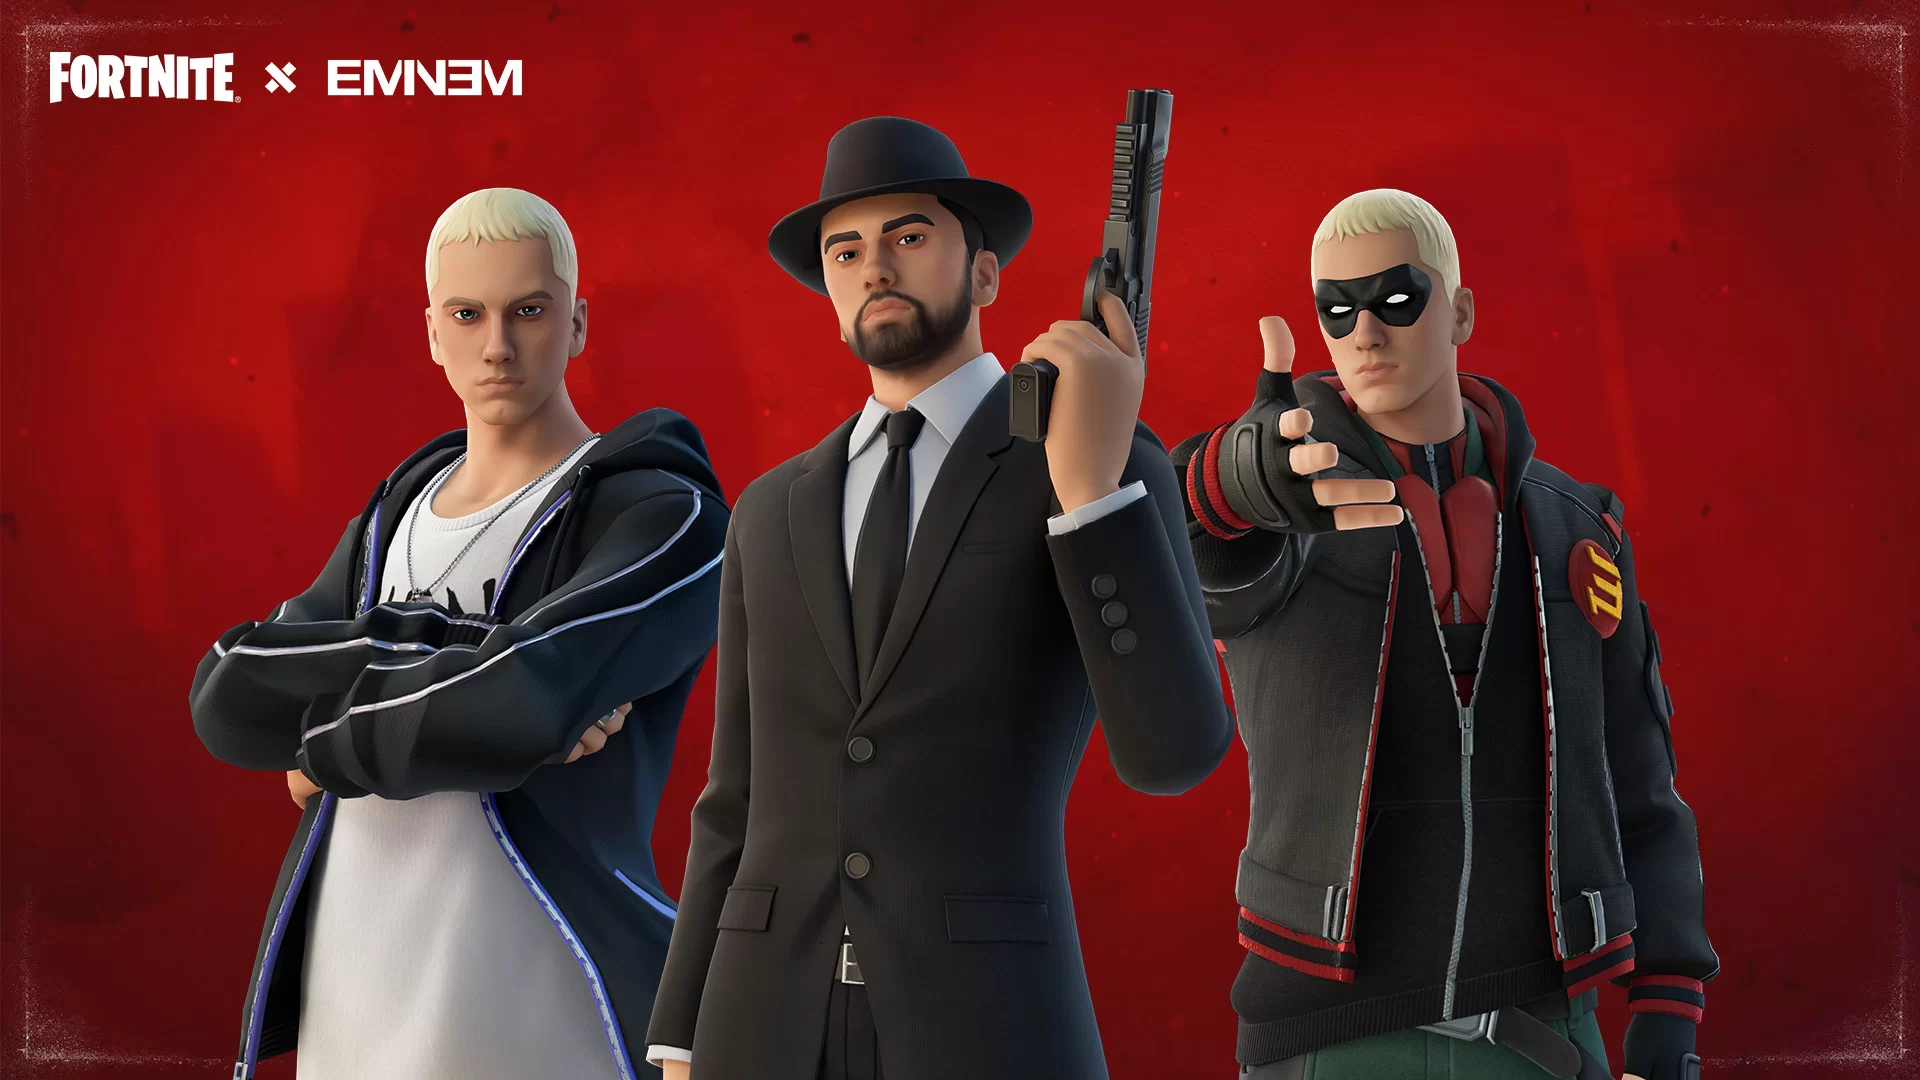 Eminem no ‘Fortnite’: rapper vai participar de evento no jogo